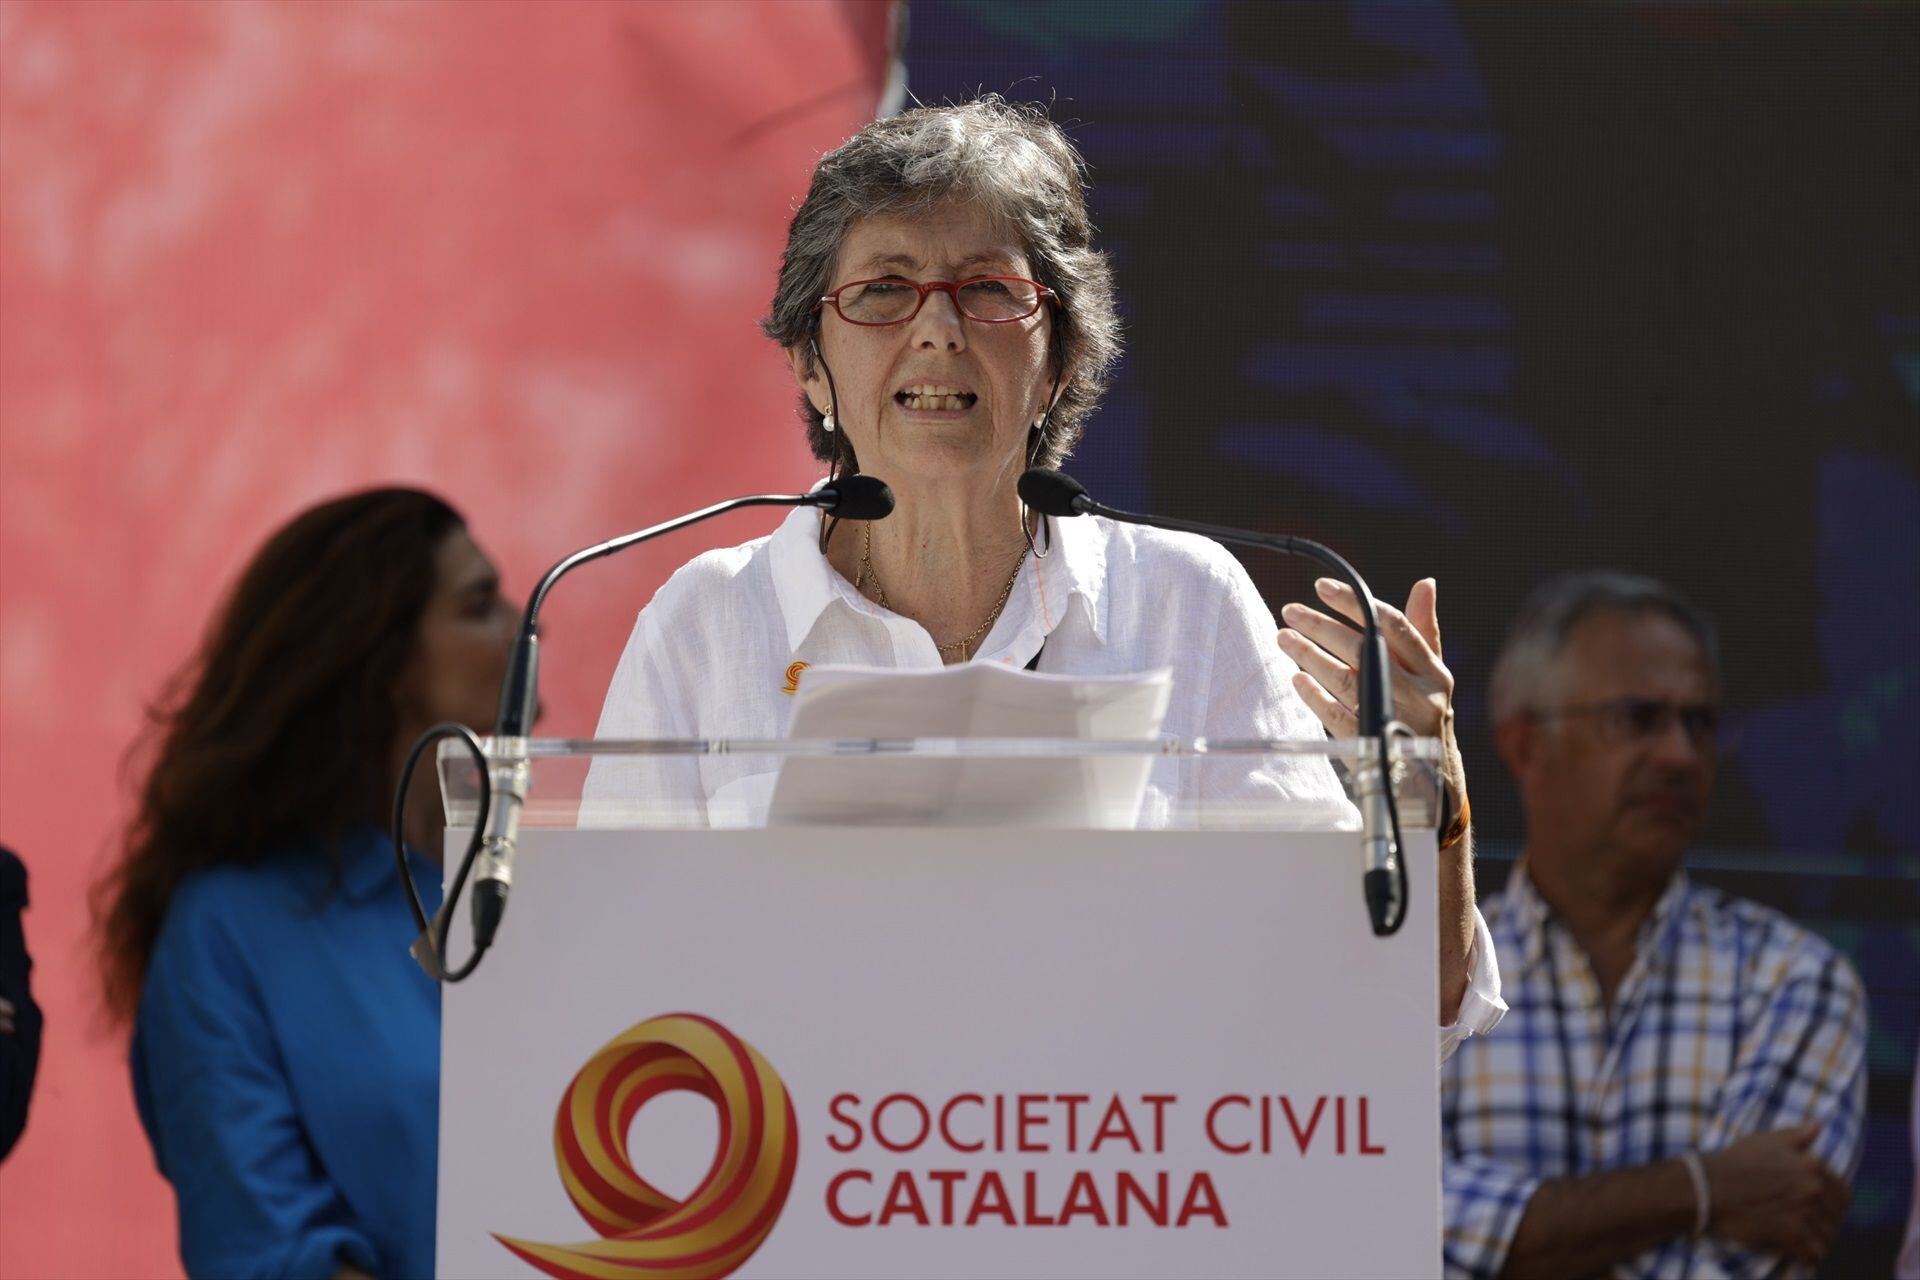 La presidenta de la Sociedad Civil Catalana, Elda Mata, interviene durante una manifestación contra la amnistía. (Kike Rincón / Europa Press)